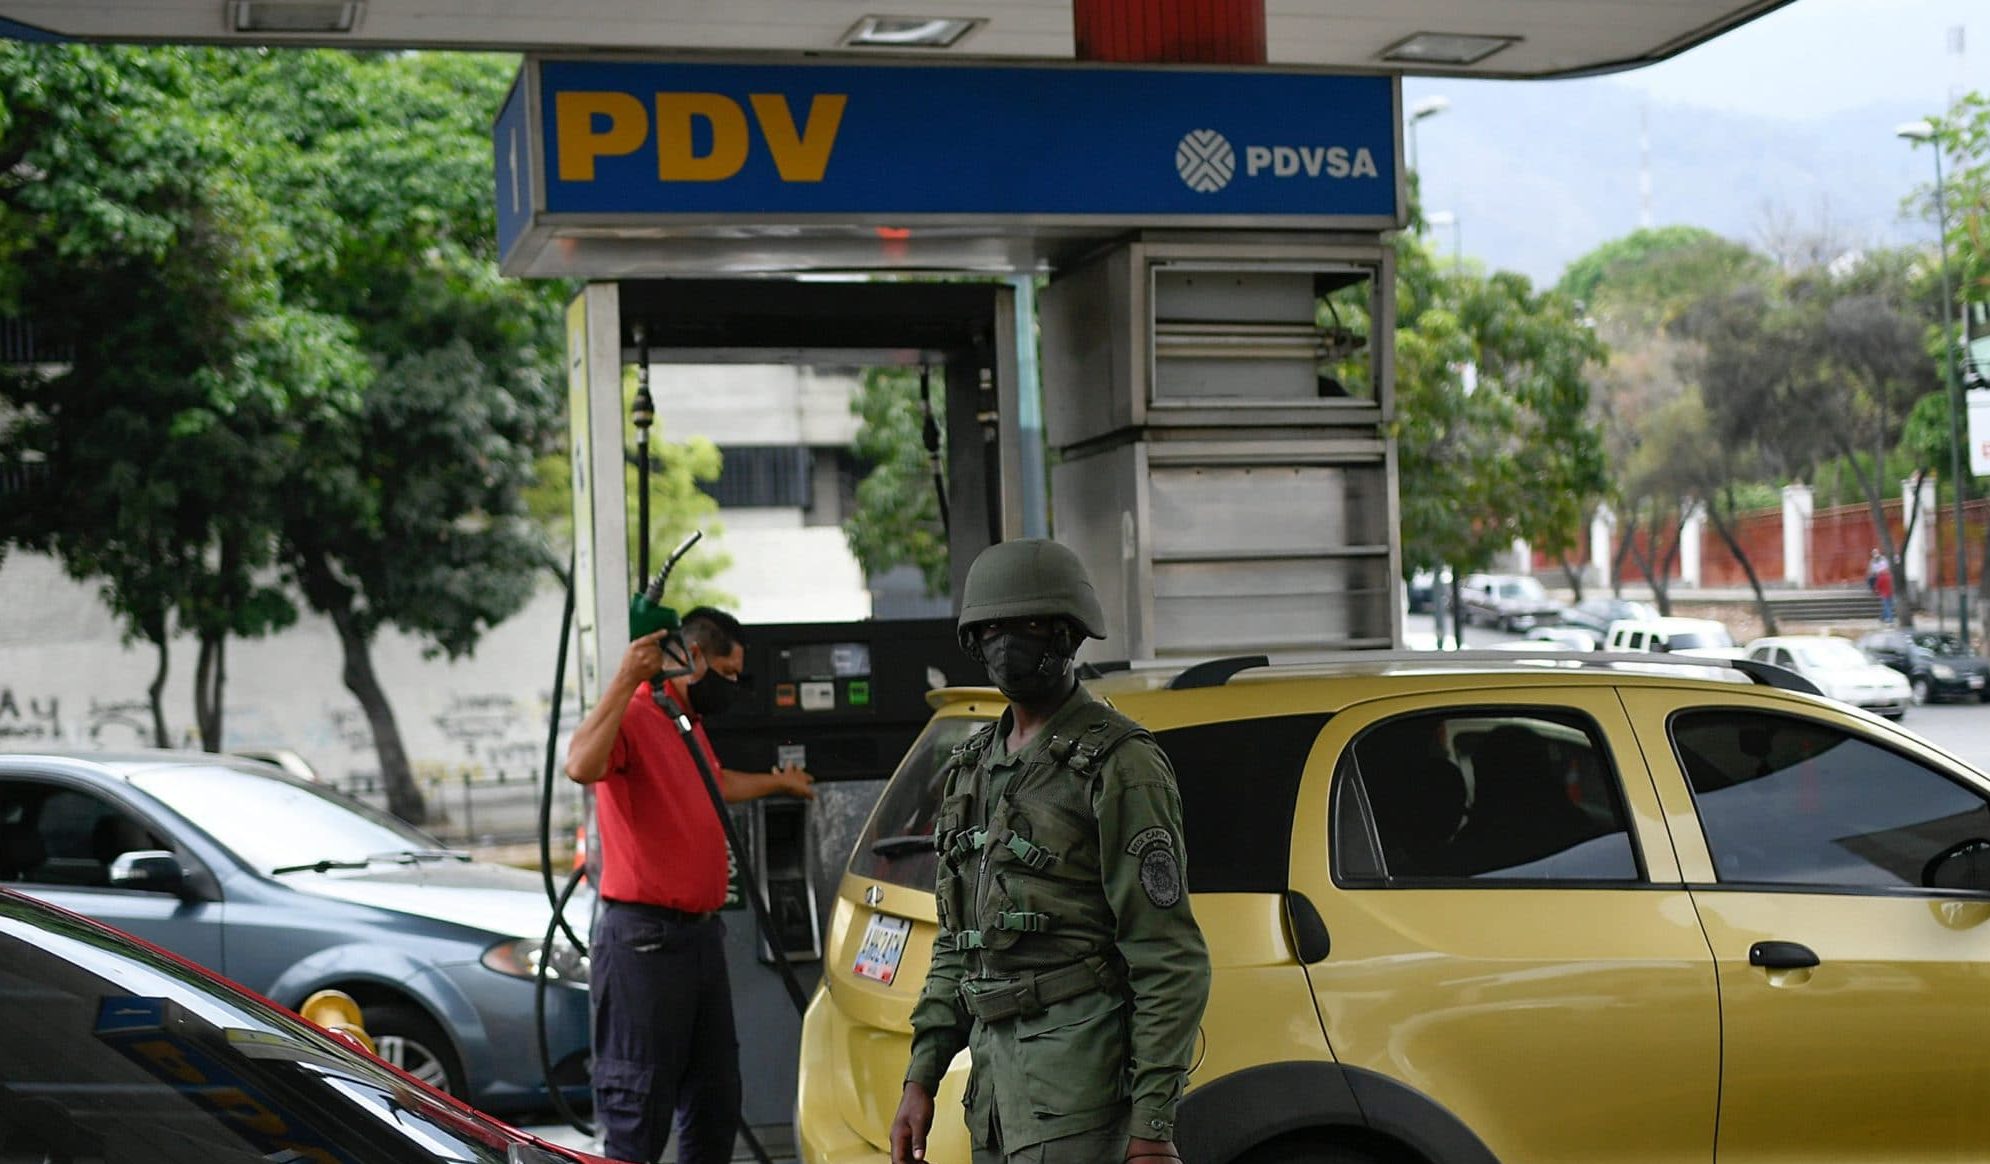 La verdadera razón detrás de la eliminación del subsidio a la gasolina en Venezuela